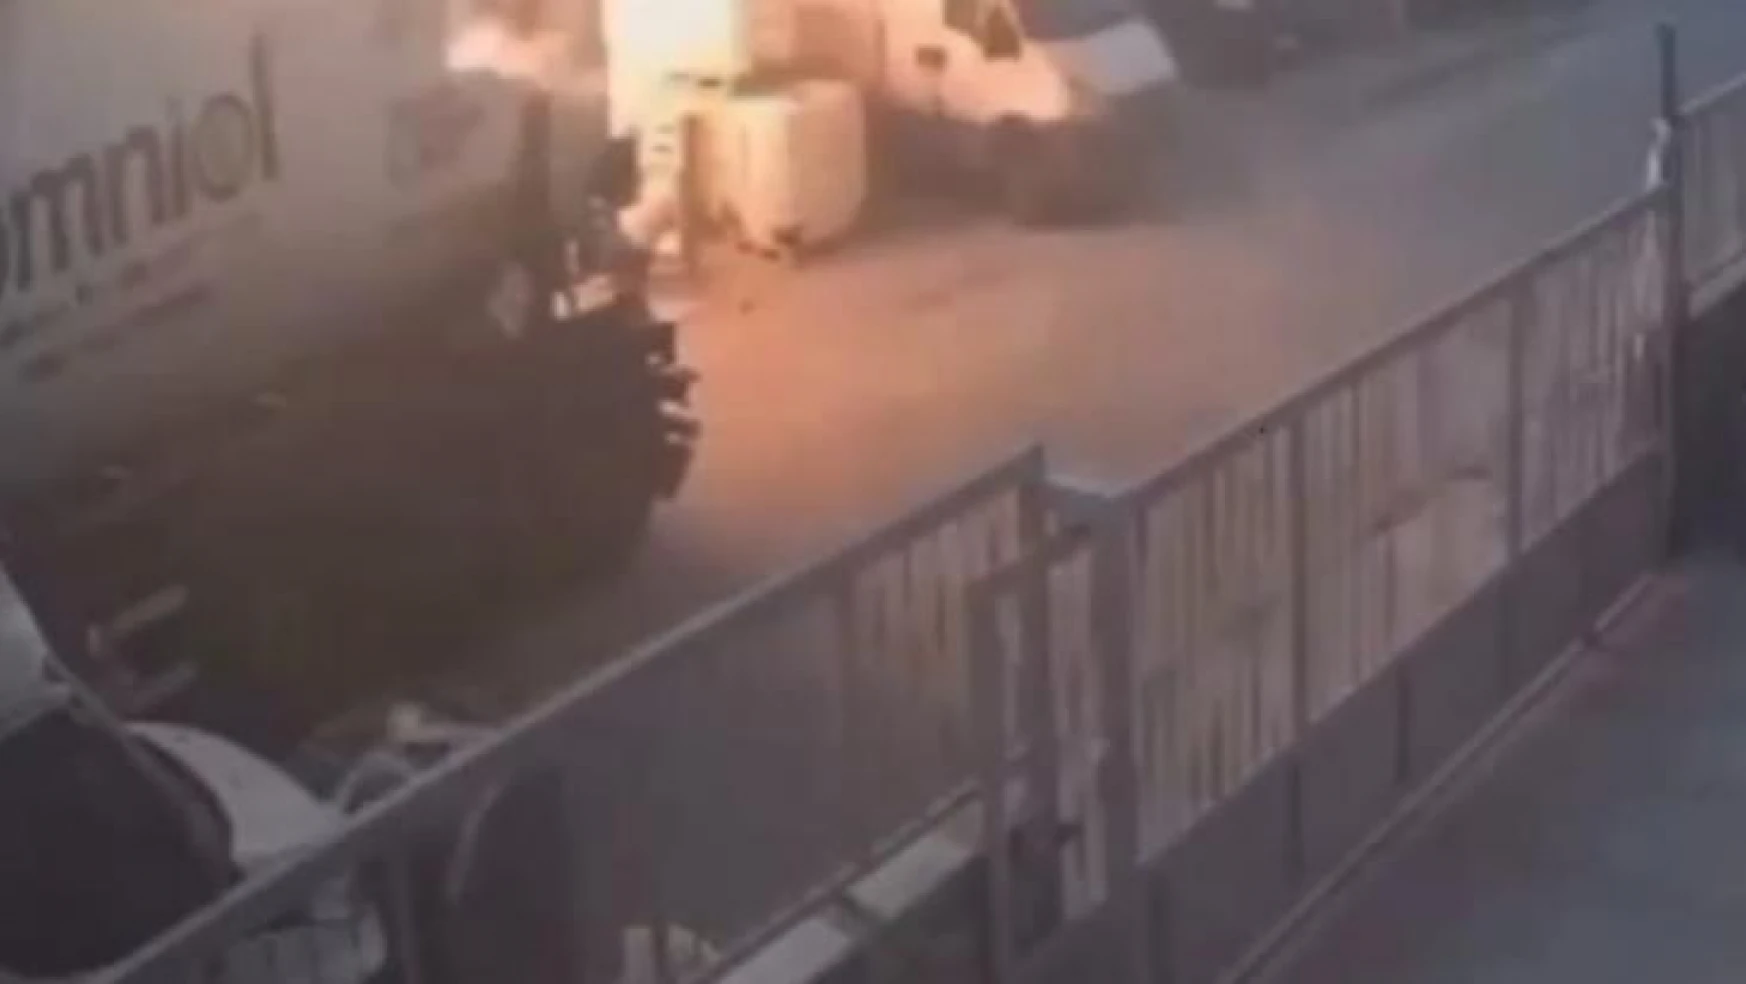 İzmir'de 1 kişinin öldüğü kimya imalathanesindeki patlama anı kamerada